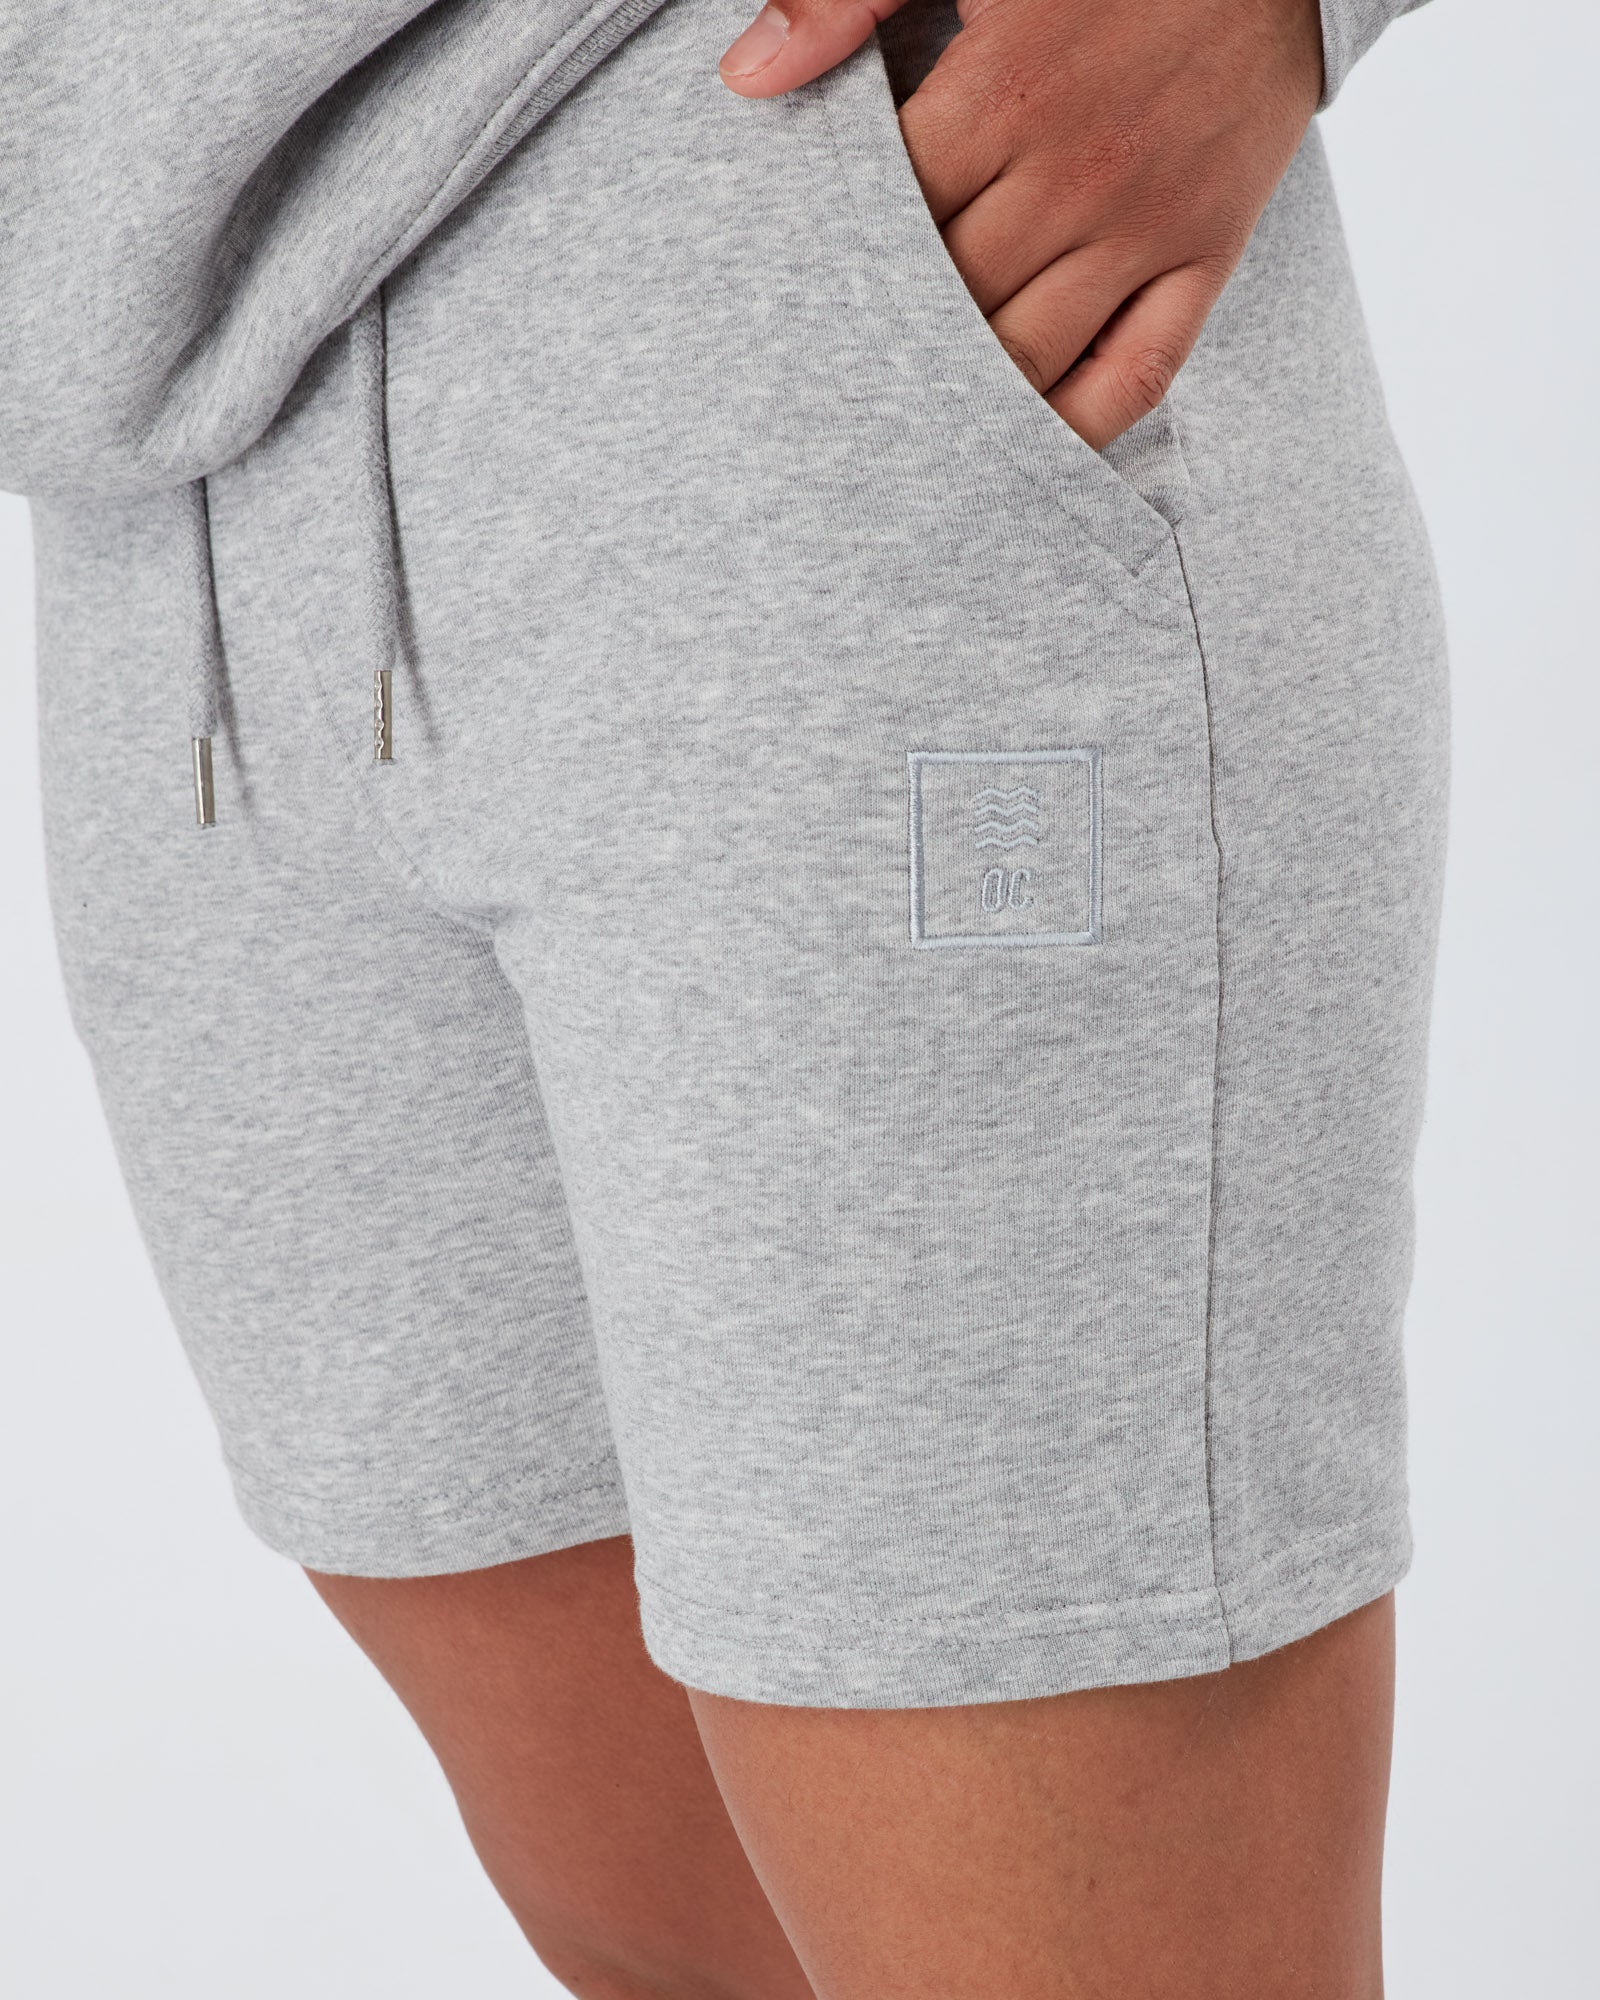 OC Lux Shorts - Grey